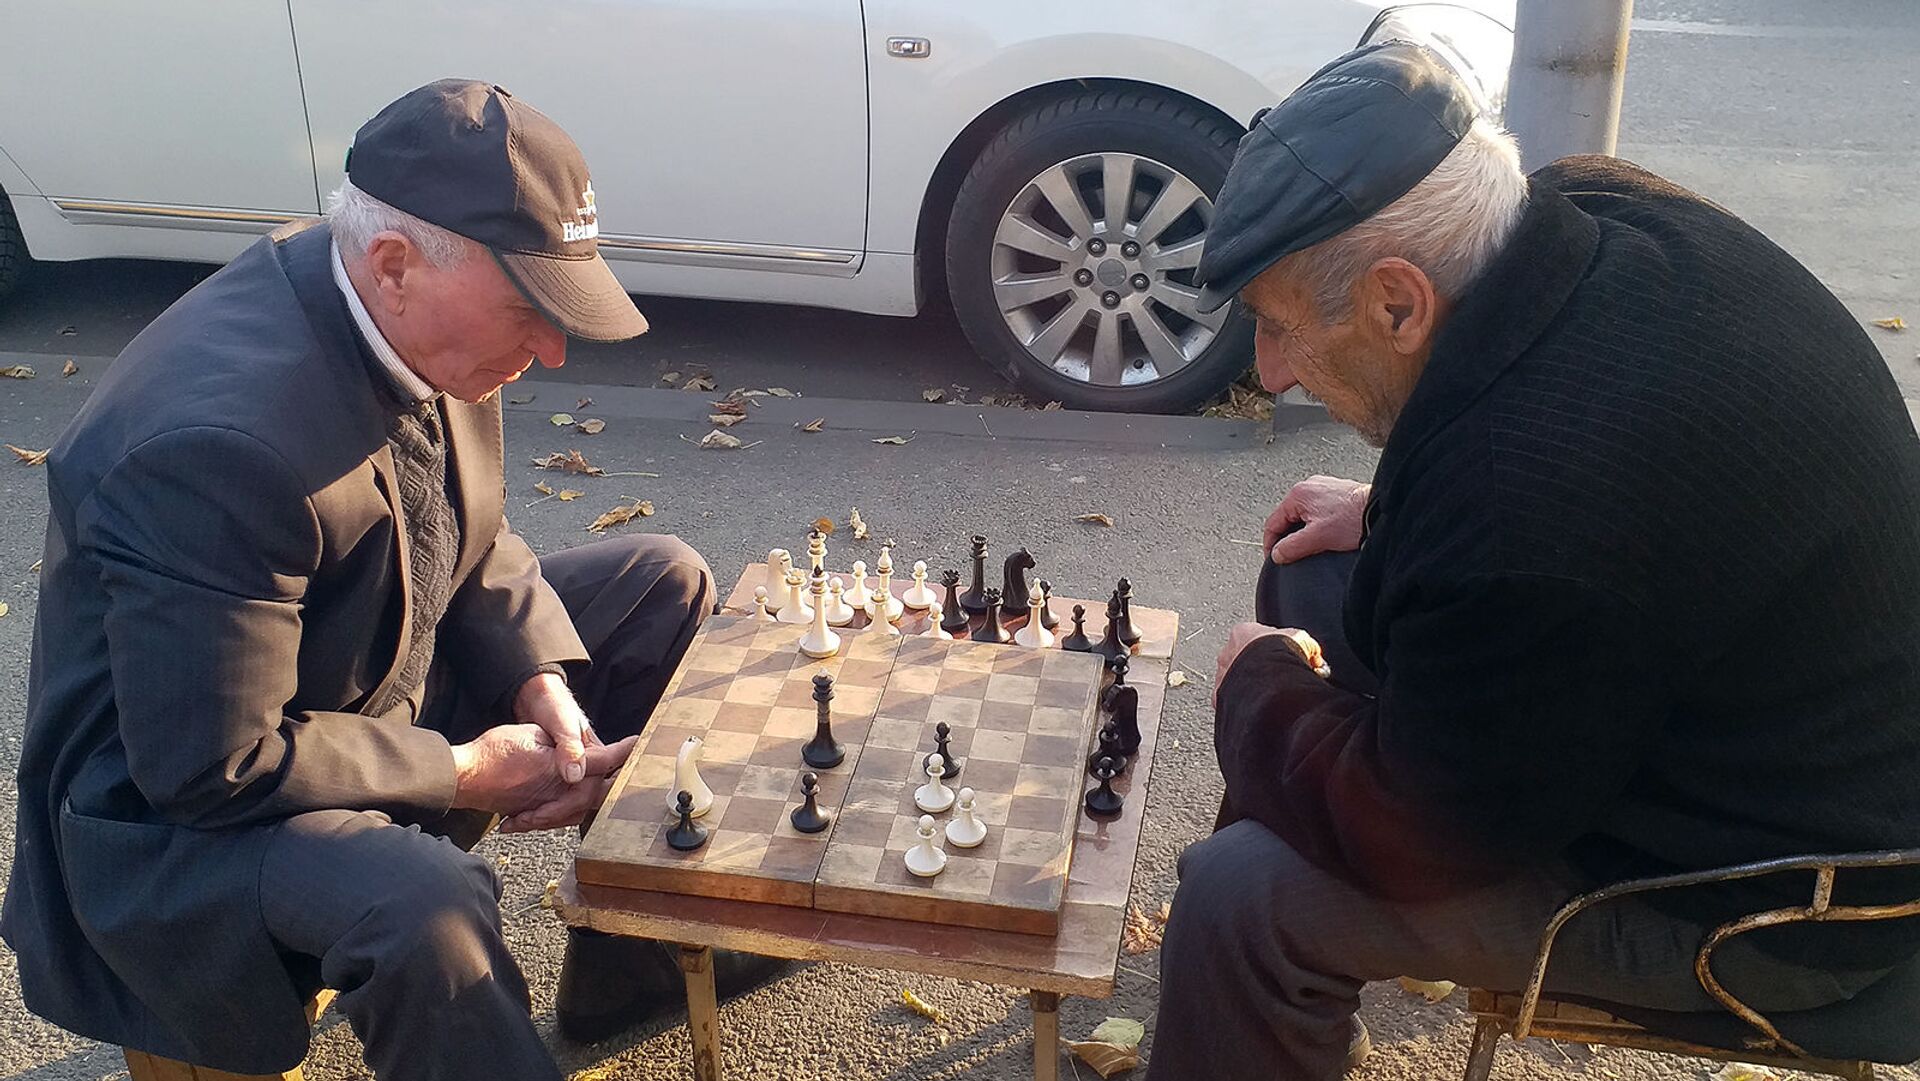 Пожилые люди играют в шахматы на одной из улиц Еревана - Sputnik Արմենիա, 1920, 10.06.2021